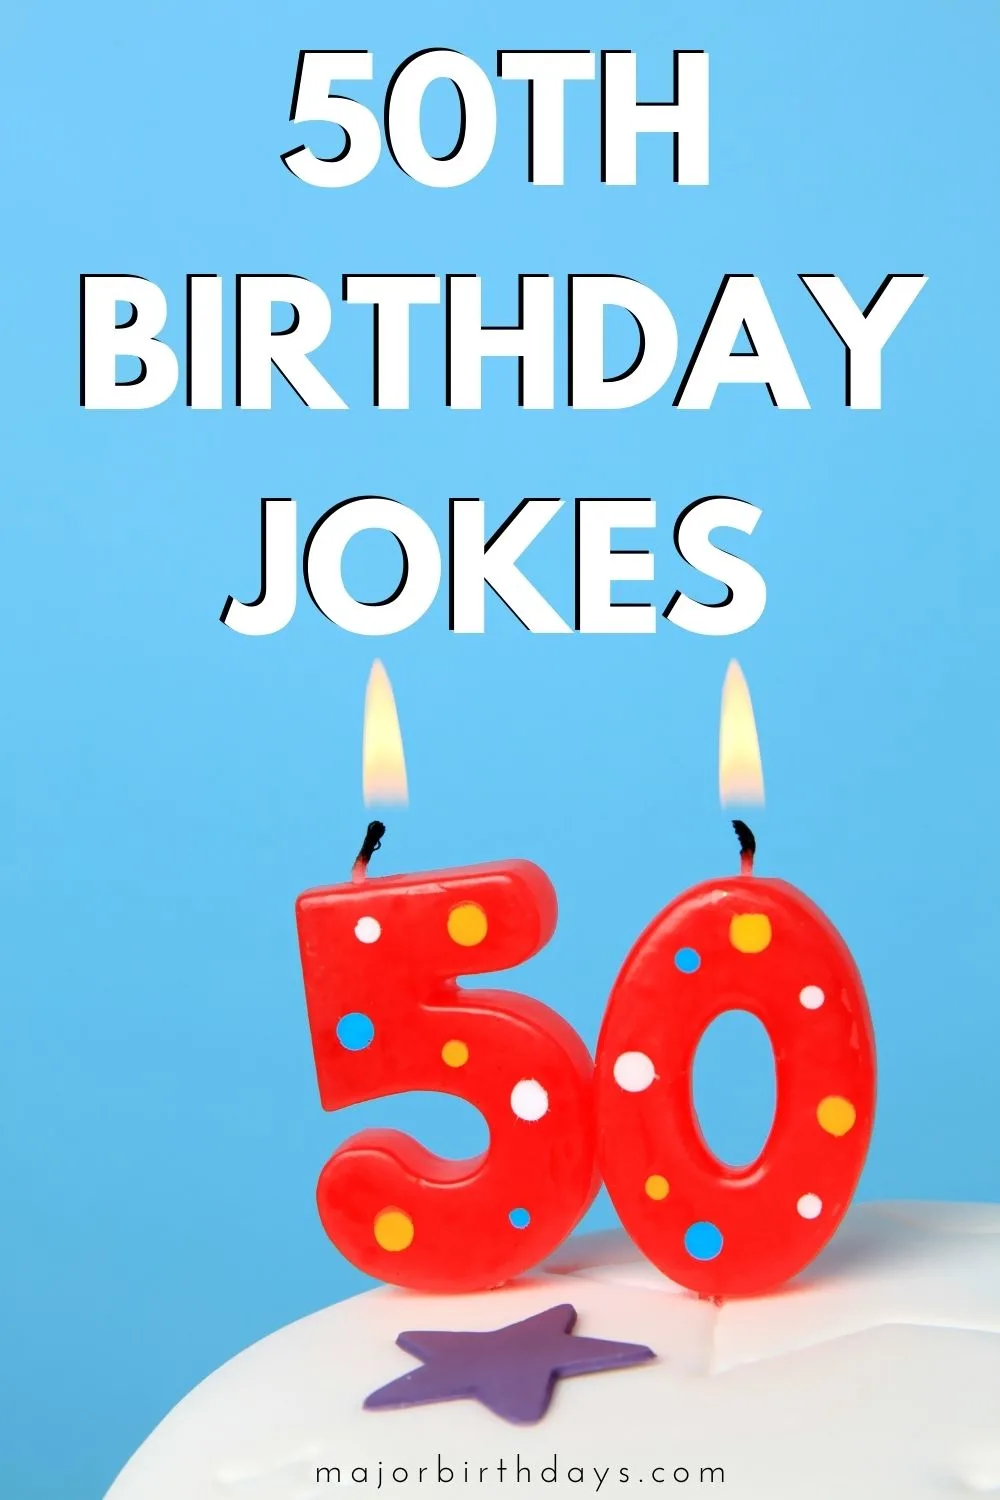 Jokes for 50th birthday - Pinterest image